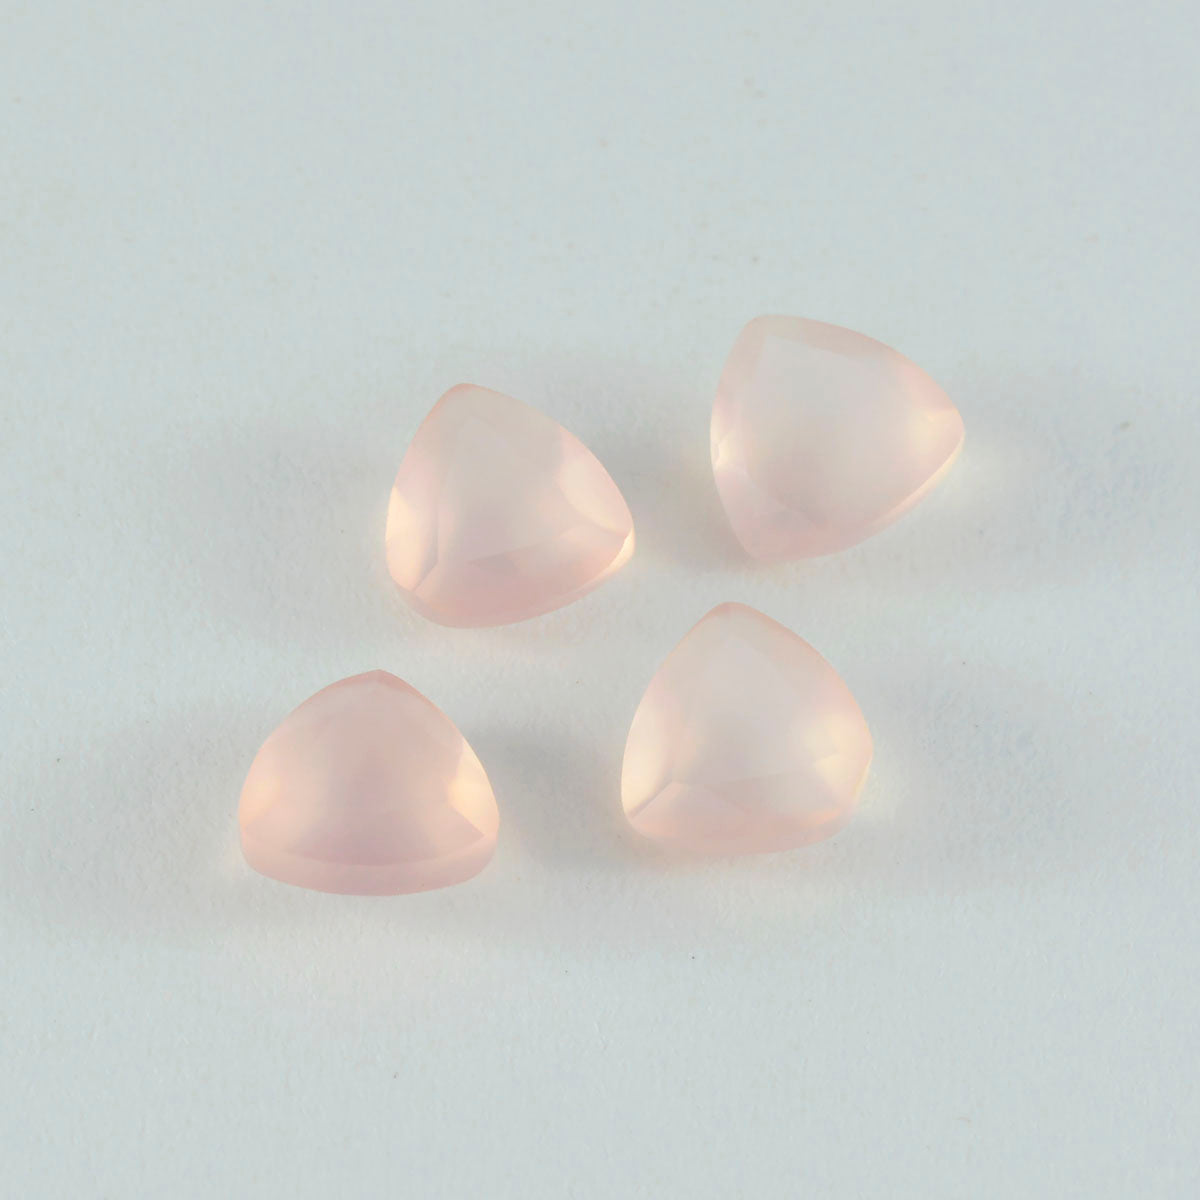 riyogems 1 шт. розовый кварц ограненный 14x14 мм форма триллиона красивое качество свободный драгоценный камень